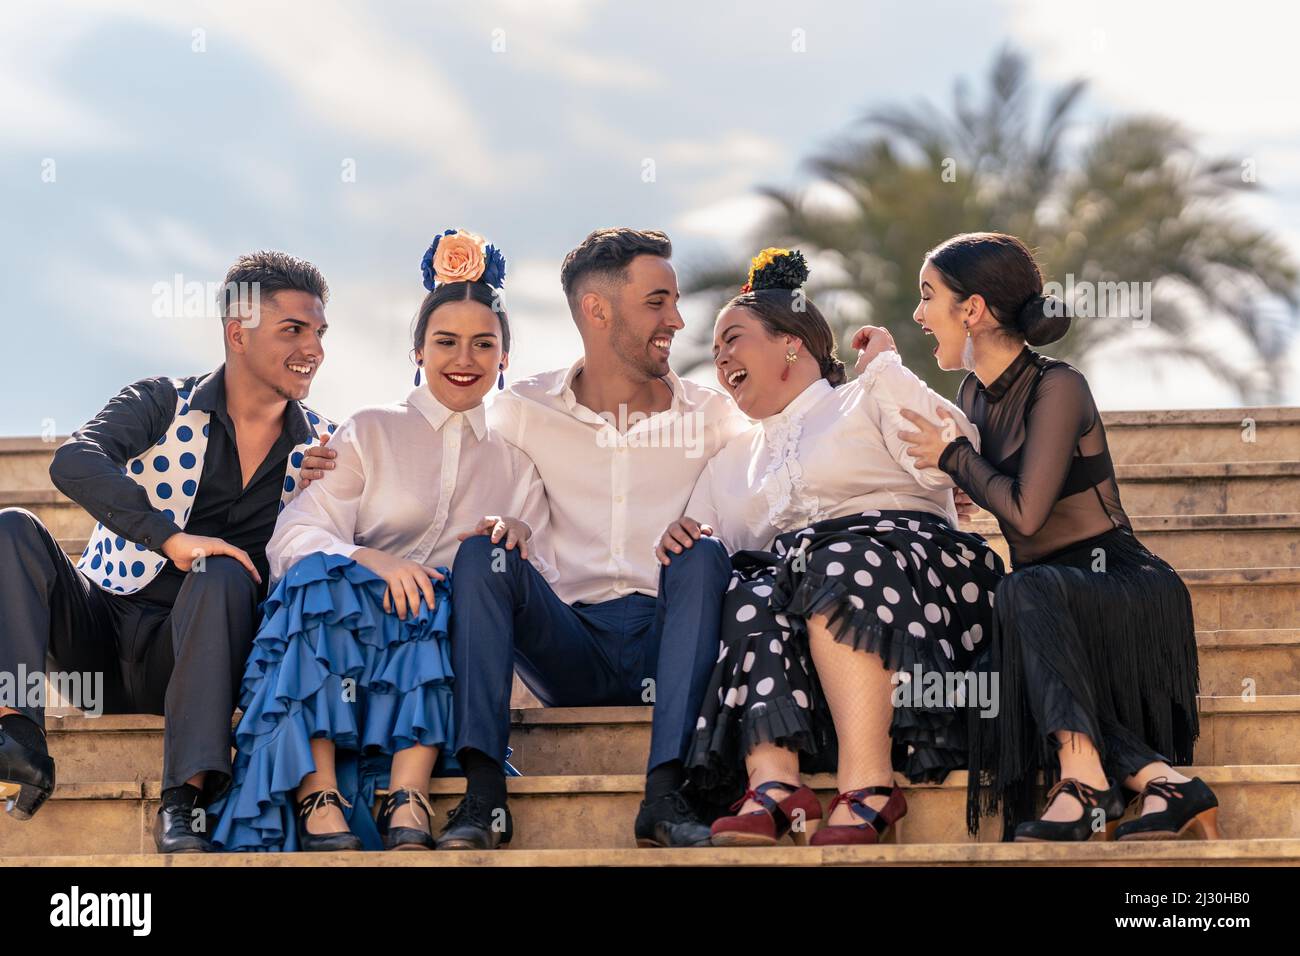 Zwei Flamenco-Lehrlinge lachen laut mit ihrem Lehrer und zwei anderen Klassenkameraden Stockfoto